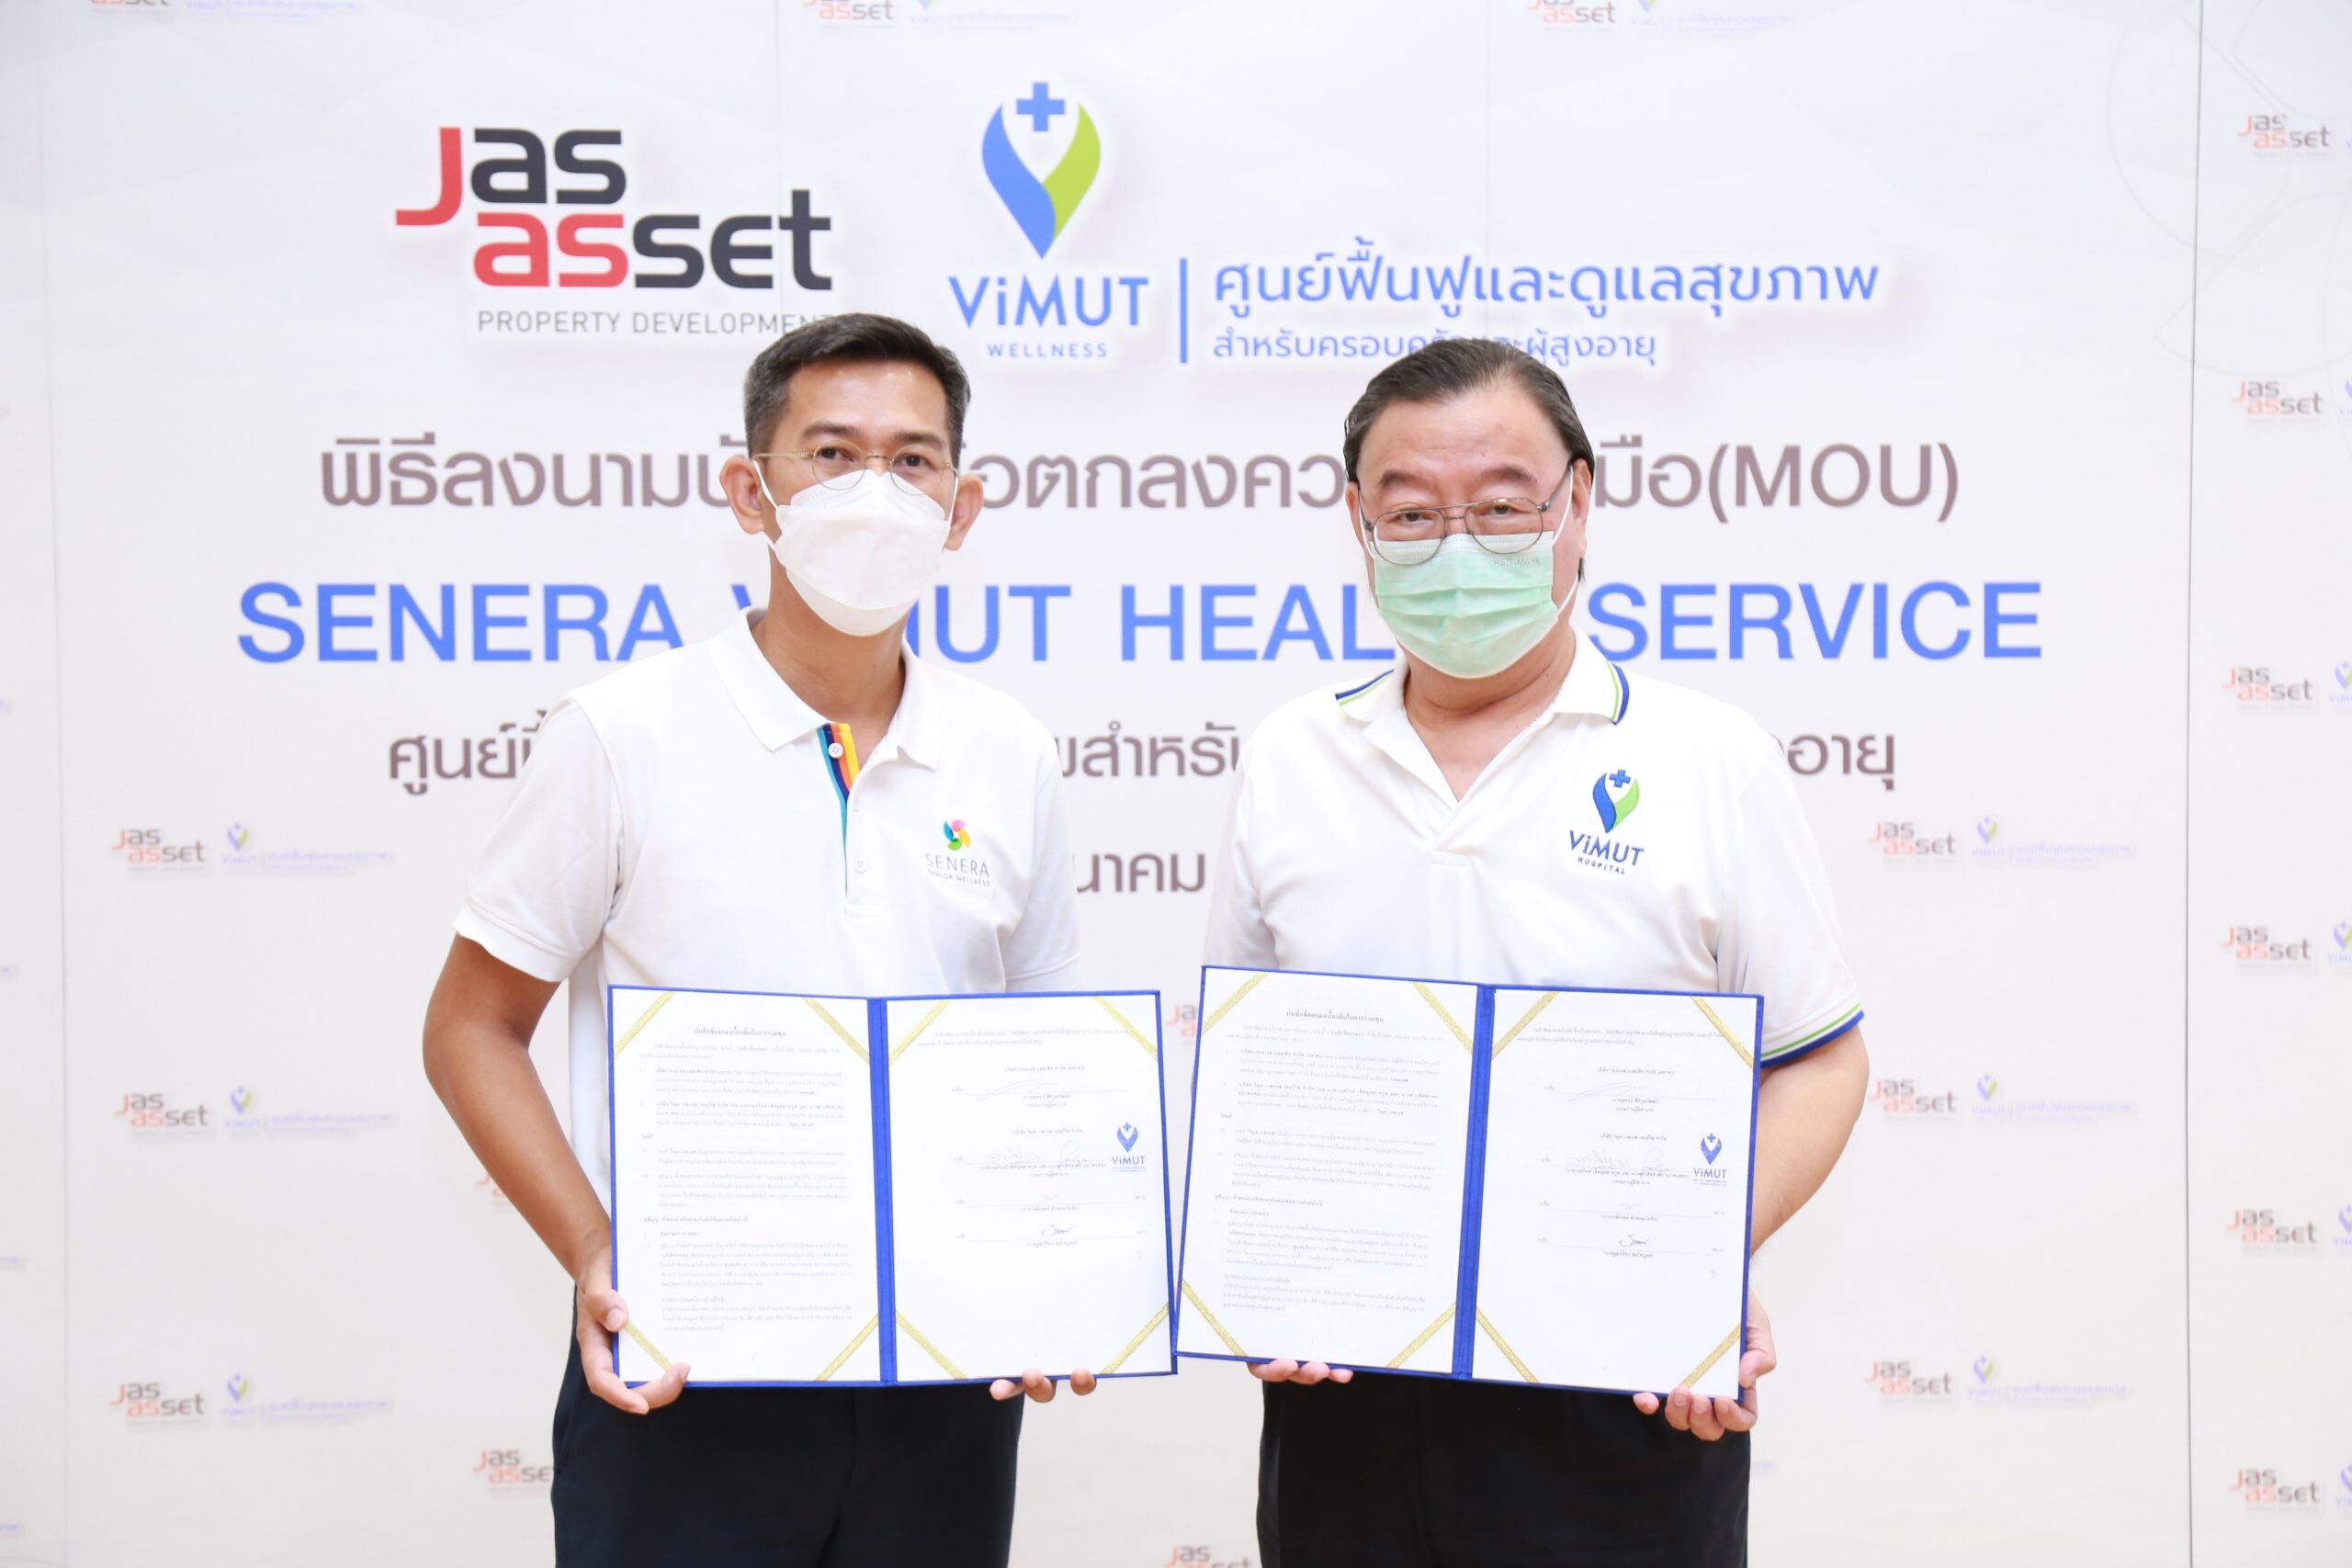 JAS ASSET ร่วมทุน โรงพยาบาลวิมุต เปิดตัวบิ๊กโปรเจกต์ "SENERA VIMUT HEALTH SERVICE" ทุ่มงบกว่า 40 ล้าน! ตอบรับประเทศไทยเข้าสู่สังคมผู้สูงอายุอย่างเต็มตัว